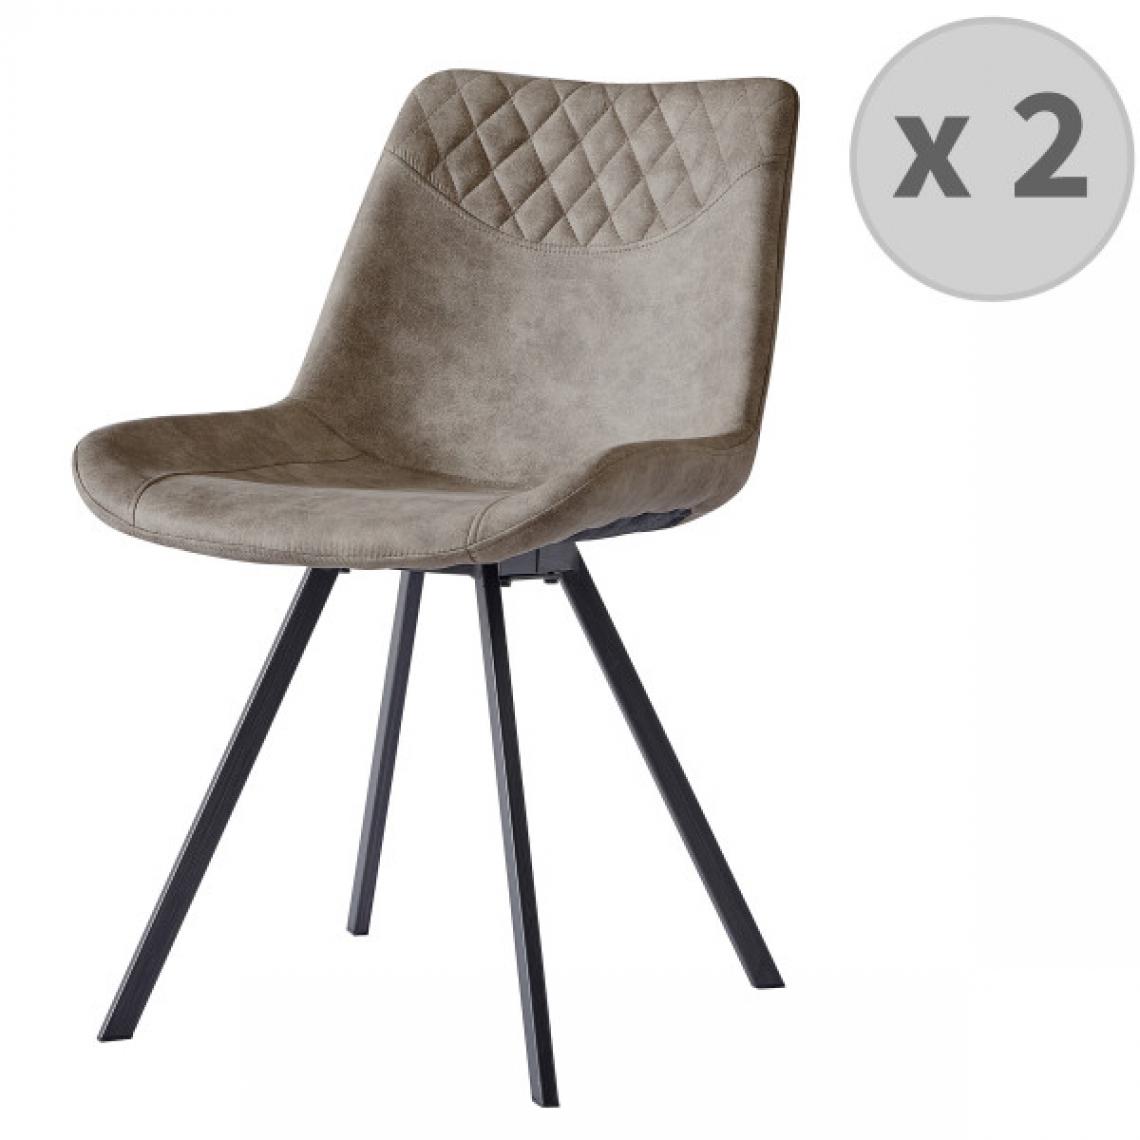 Moloo - FALCON-Chaise microfibre vintage brun clair pieds métal noir (x2) - Chaises